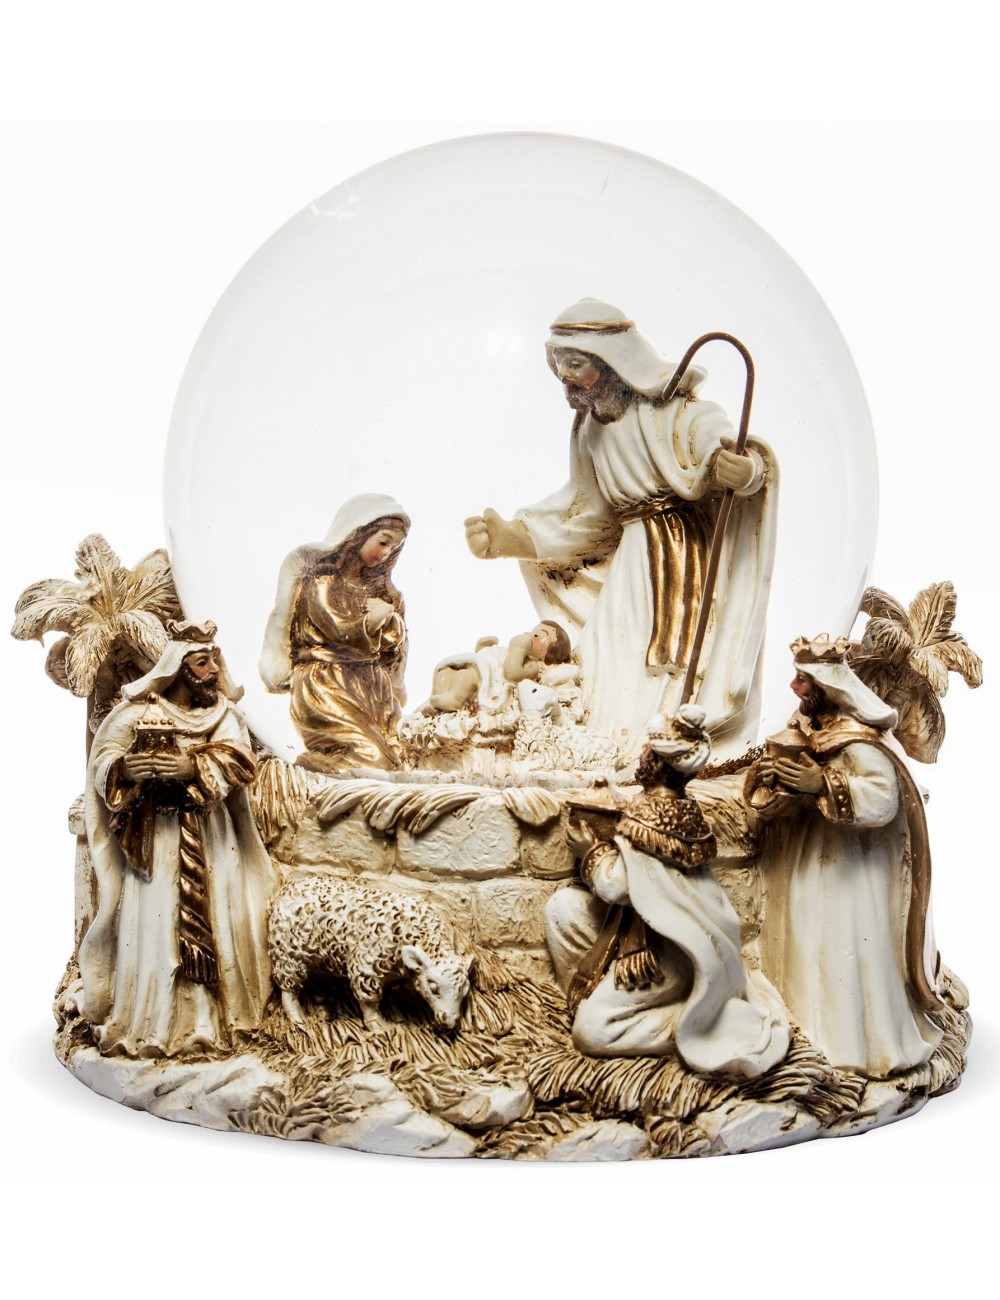 Szklana kula ze złotym brokatem BOŻE NARODZENIE Dzieciątko Trzej Królowie 16x15 cm